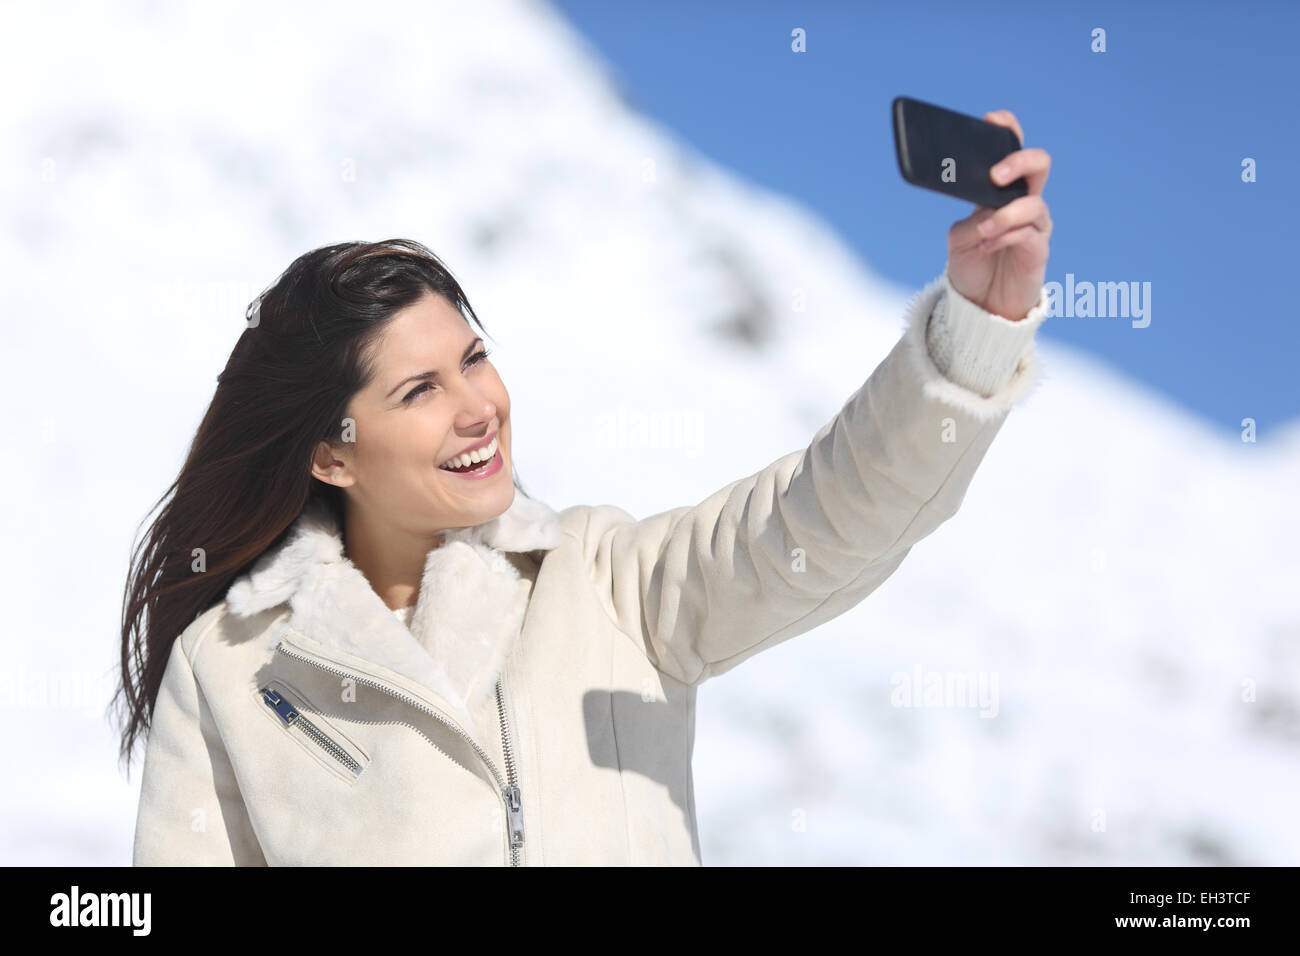 Mode Frau Fotografieren ein Selbstporträt im Winterurlaub mit einem schneebedeckten Berg im Hintergrund Stockfoto